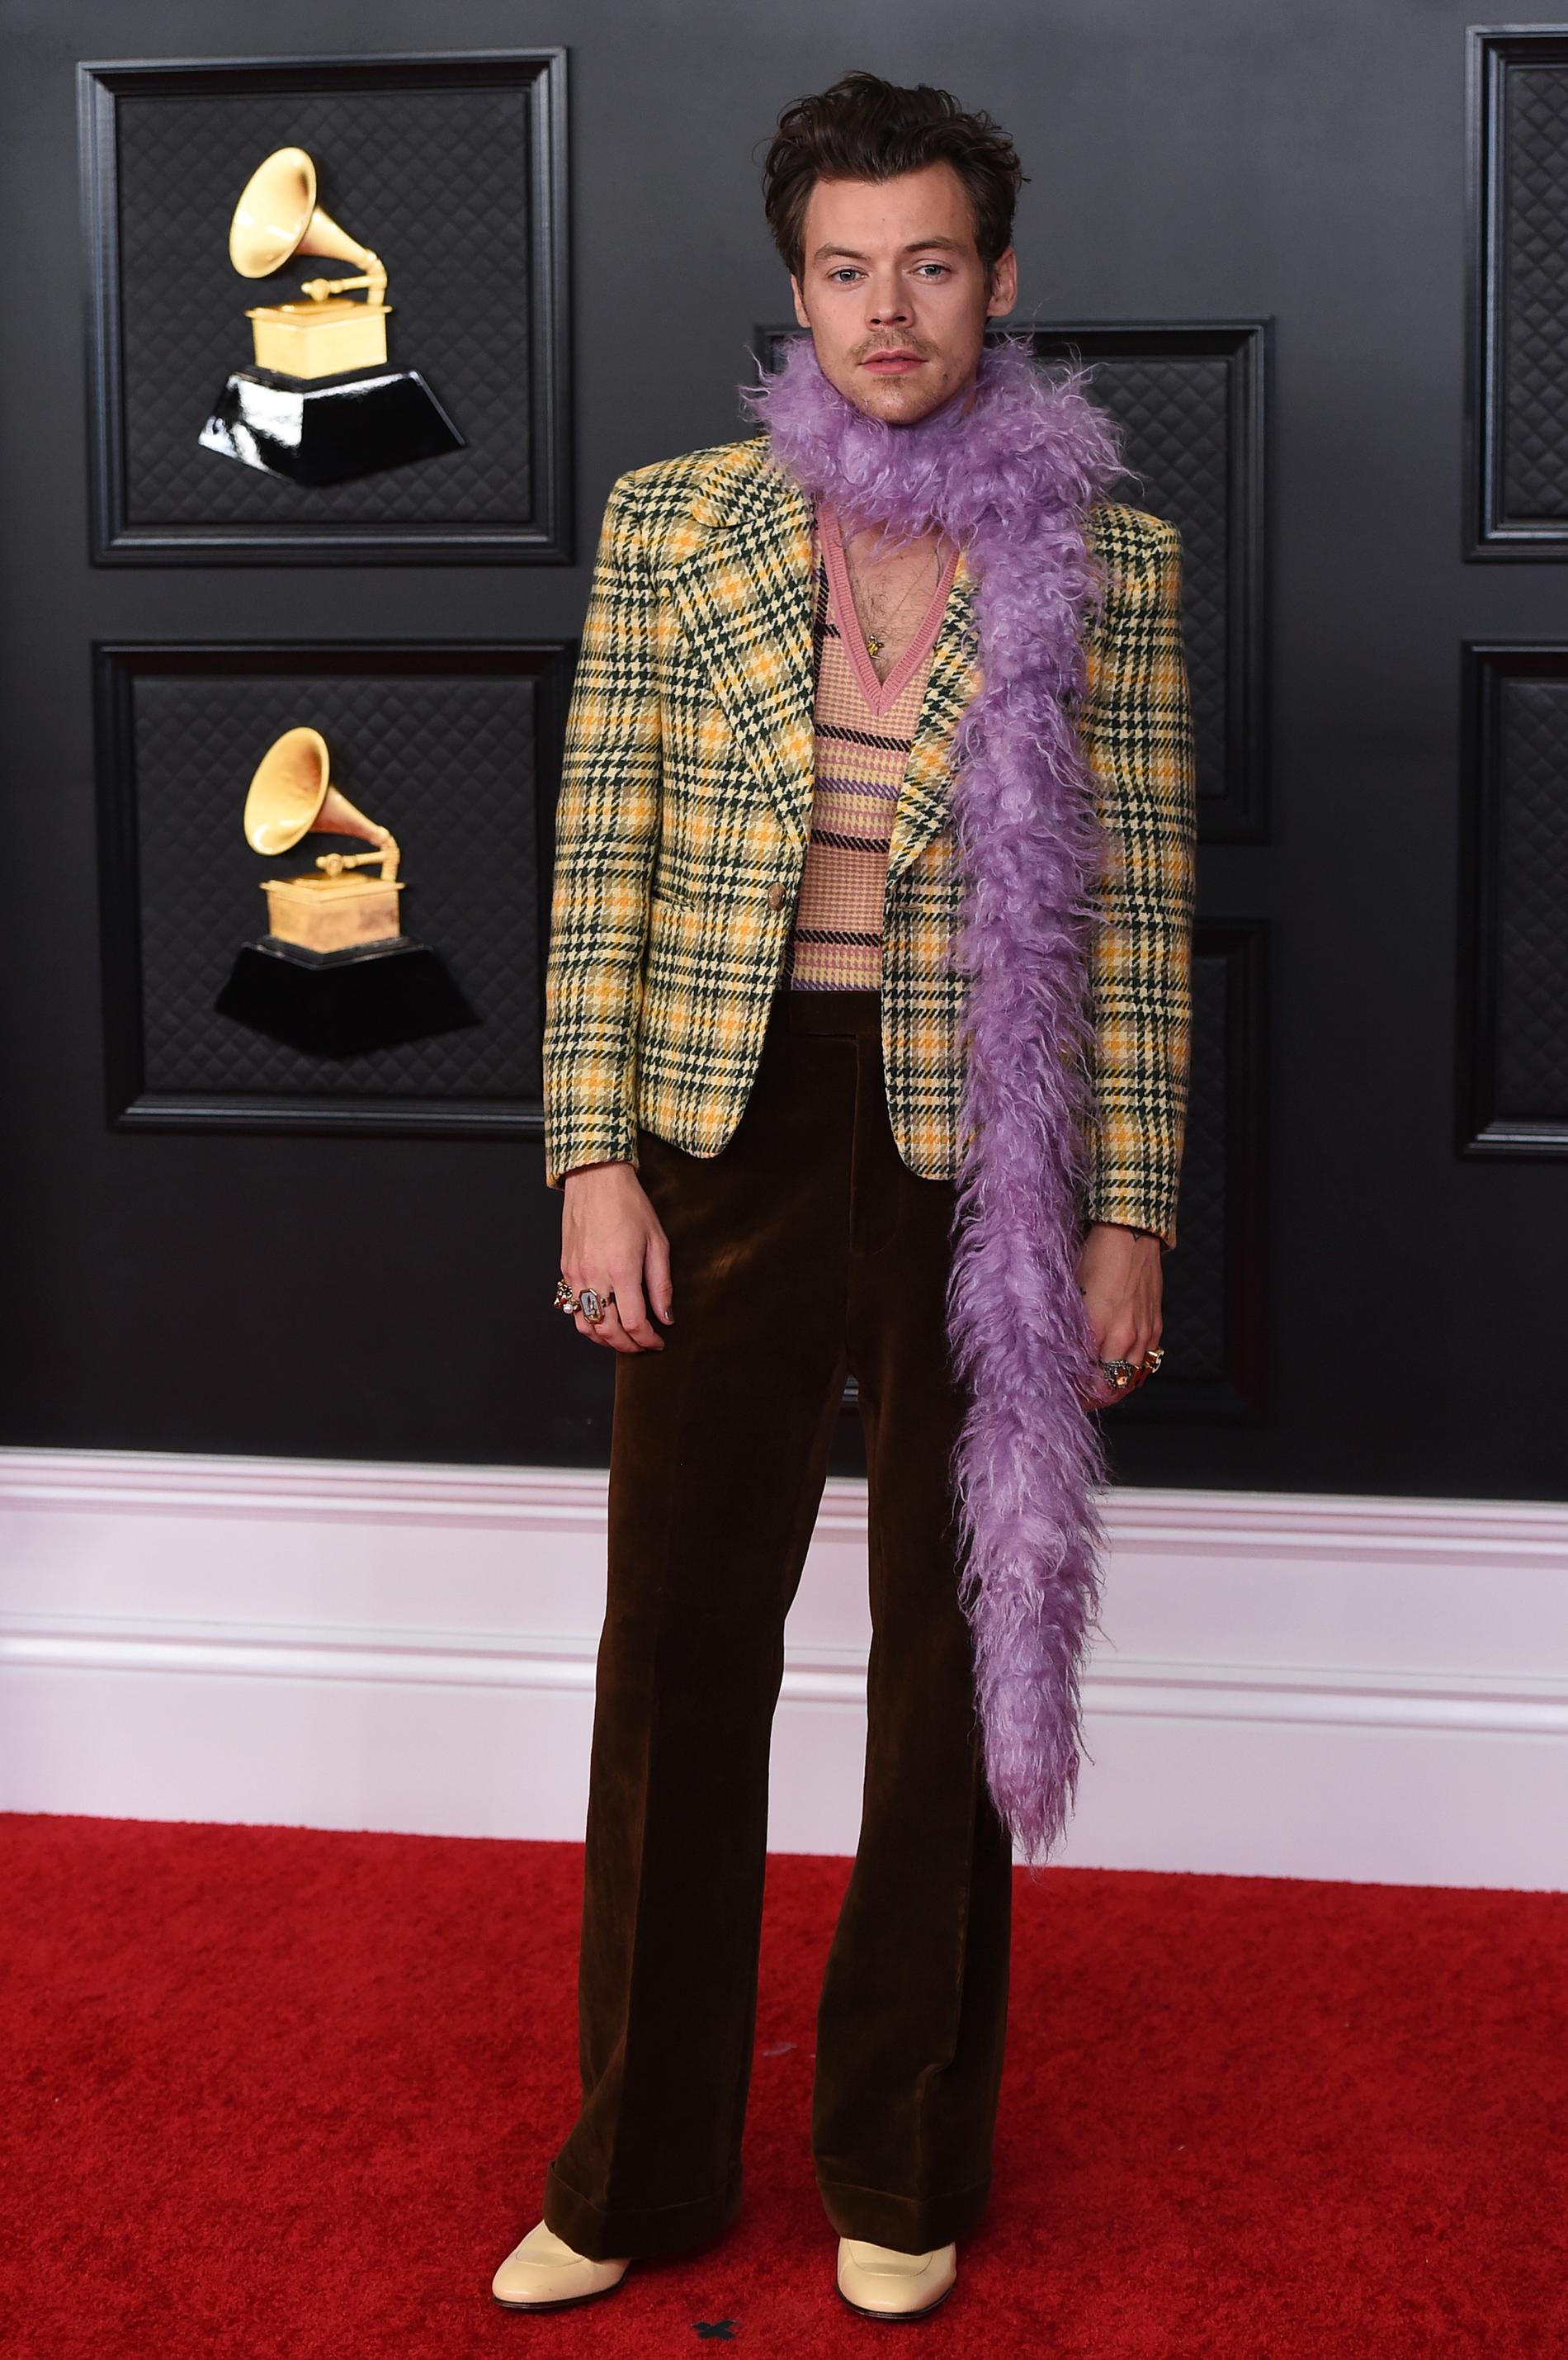 En Gucciprydd Harry Styles poserar på röda mattan under den 63:e Grammygalan. En tårögd Styles tog senare emot priset som Bästa soloartist, pop för låten "Watermelon sugar".